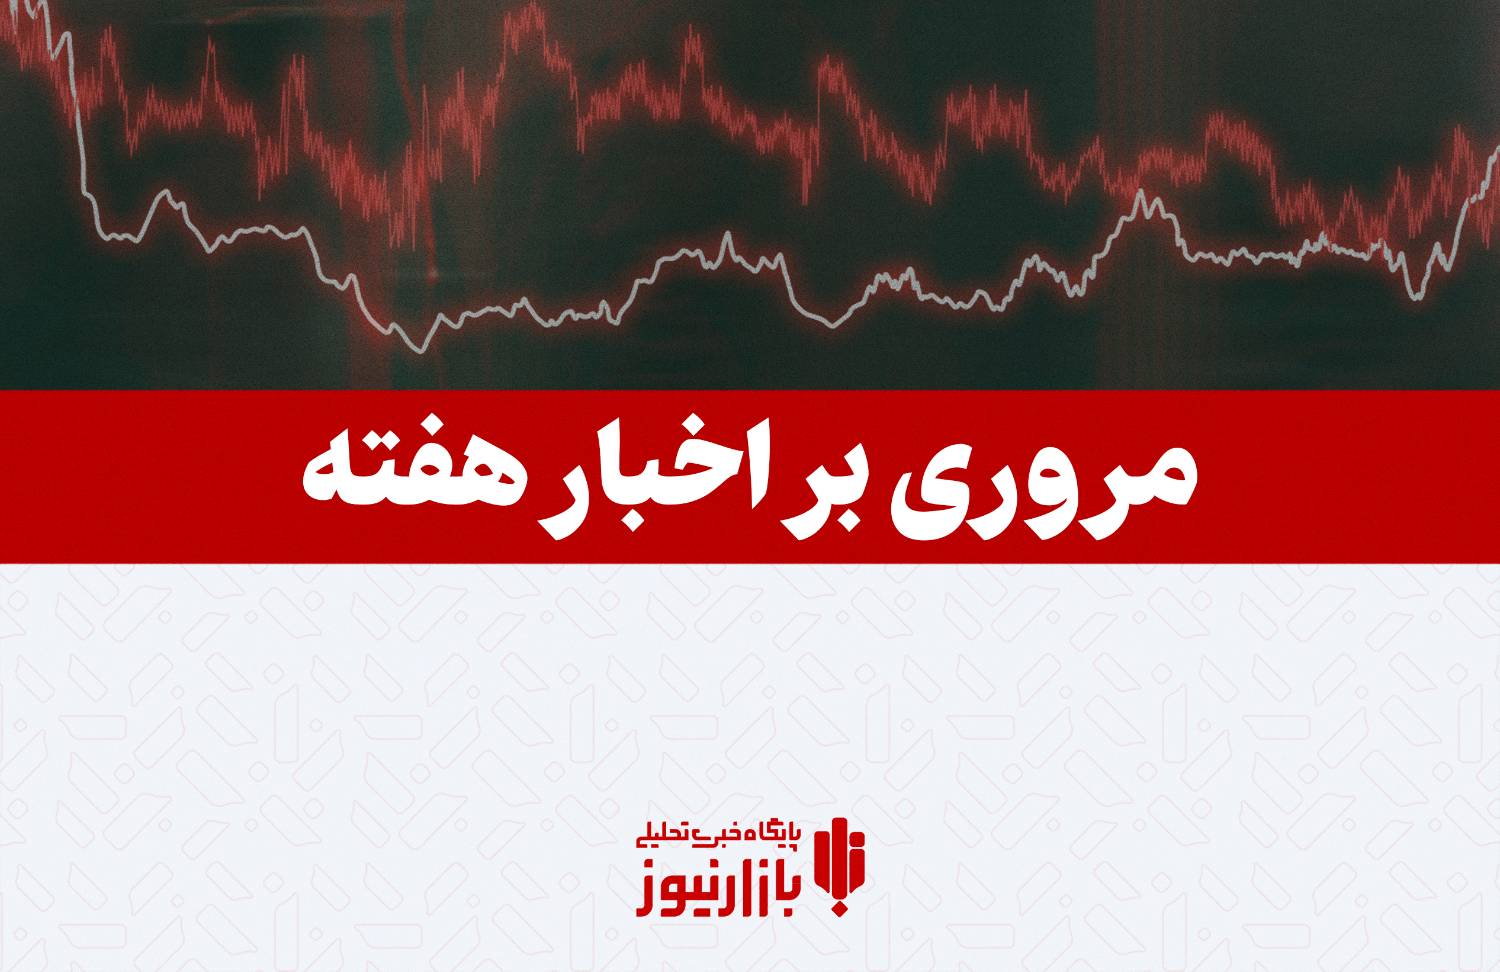 مروری بر اخبار مهم اقتصادی هفته دوم اردیبهشت/ از خداحافظی فاطمی امین تا خط و نشان فرزین